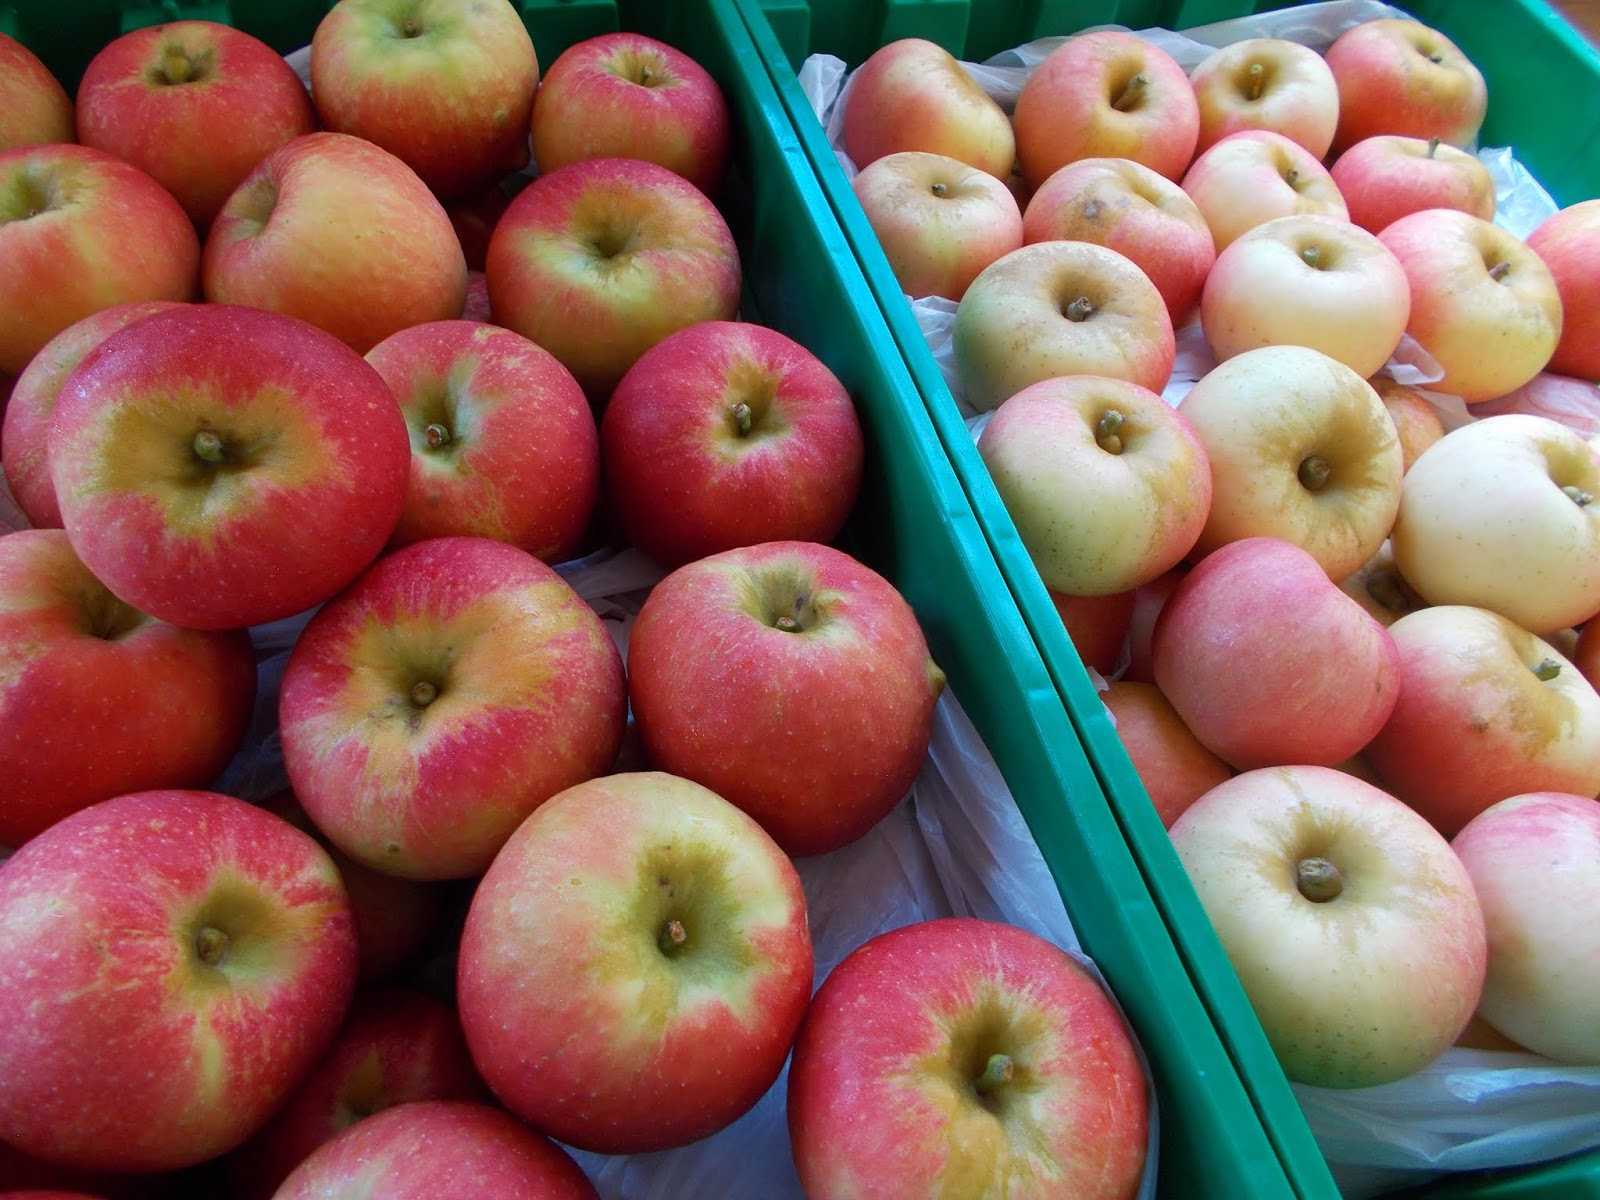 Описание сорта яблони горнист: фото яблок, важные характеристики, урожайность с дерева